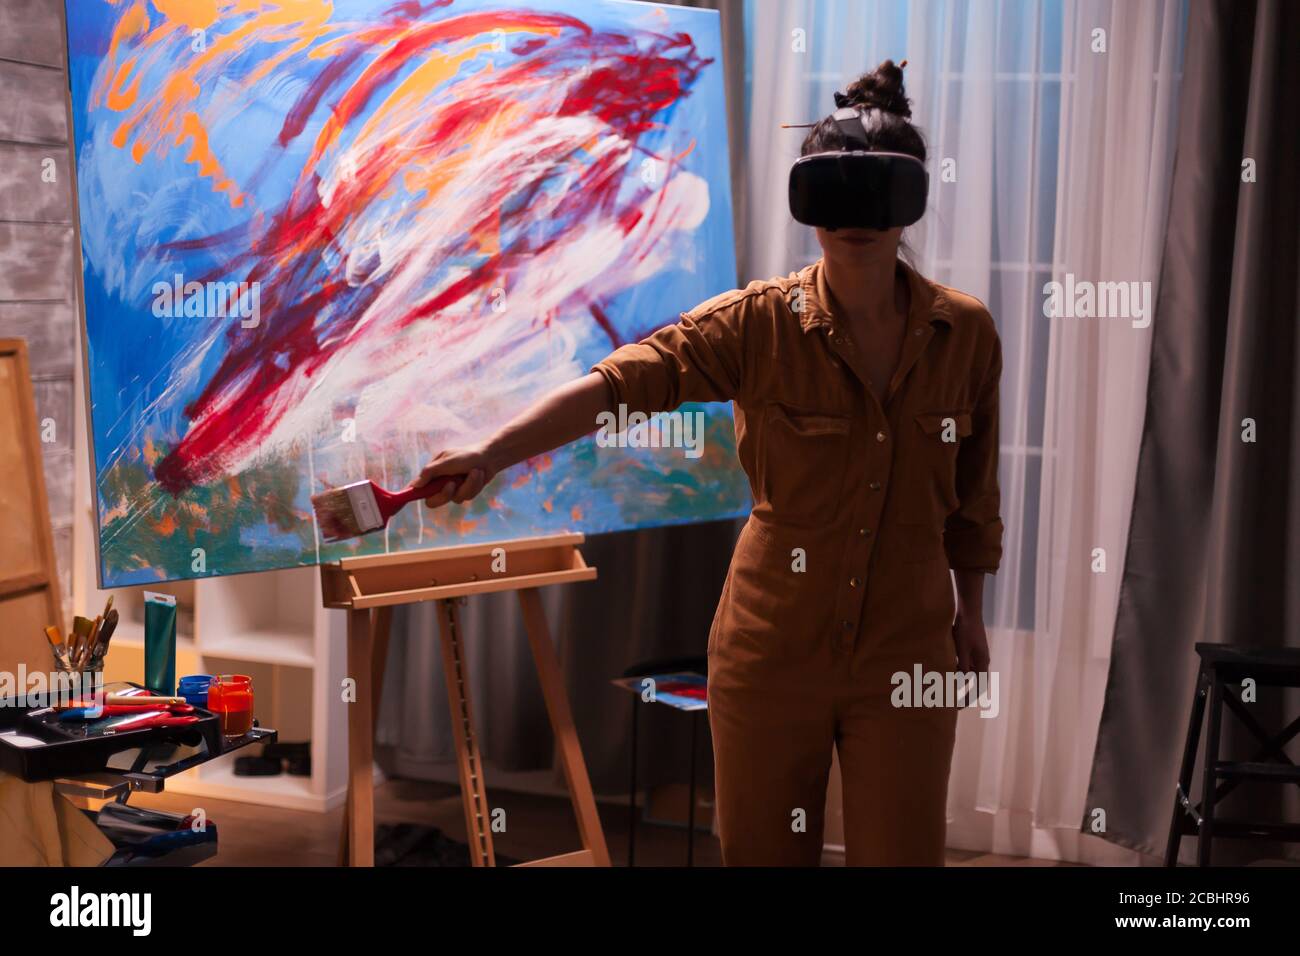 Delegeret defekt Picasso Artista creativo que se atiene en la realidad virtual de lona con el  auricular vr. Pintura de arte moderno sobre lienzo, obra maestra creativa,  contemporánea y exitosa de arte artístico Fotografía de